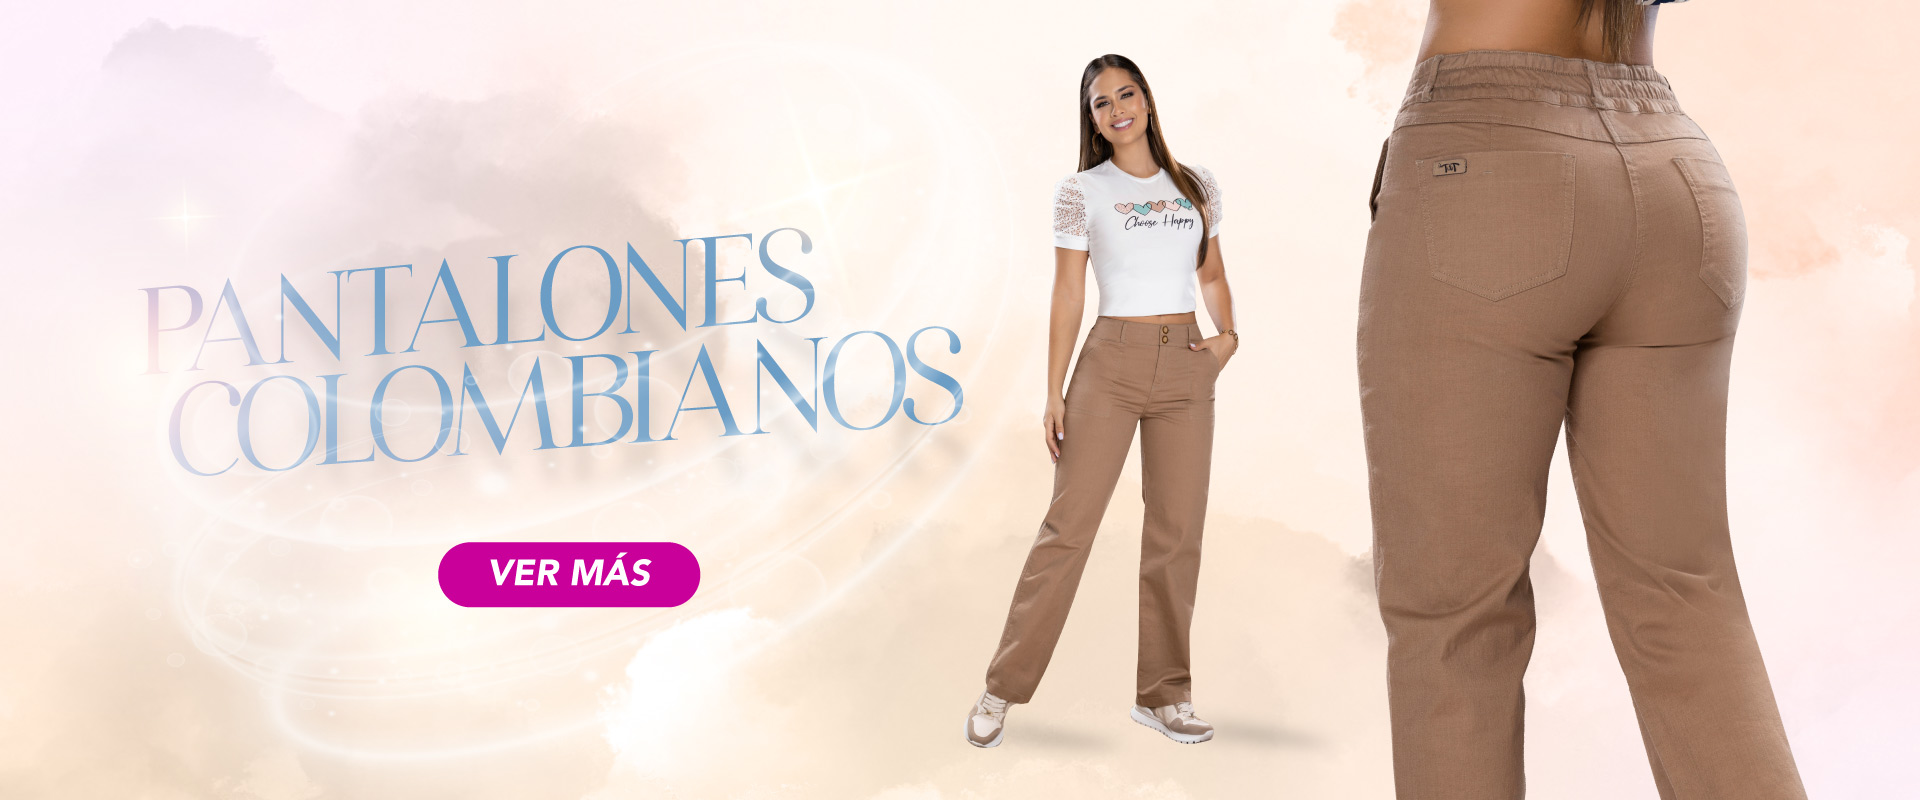 Banner-categoría-pantalones-colombianas-1920-x-800